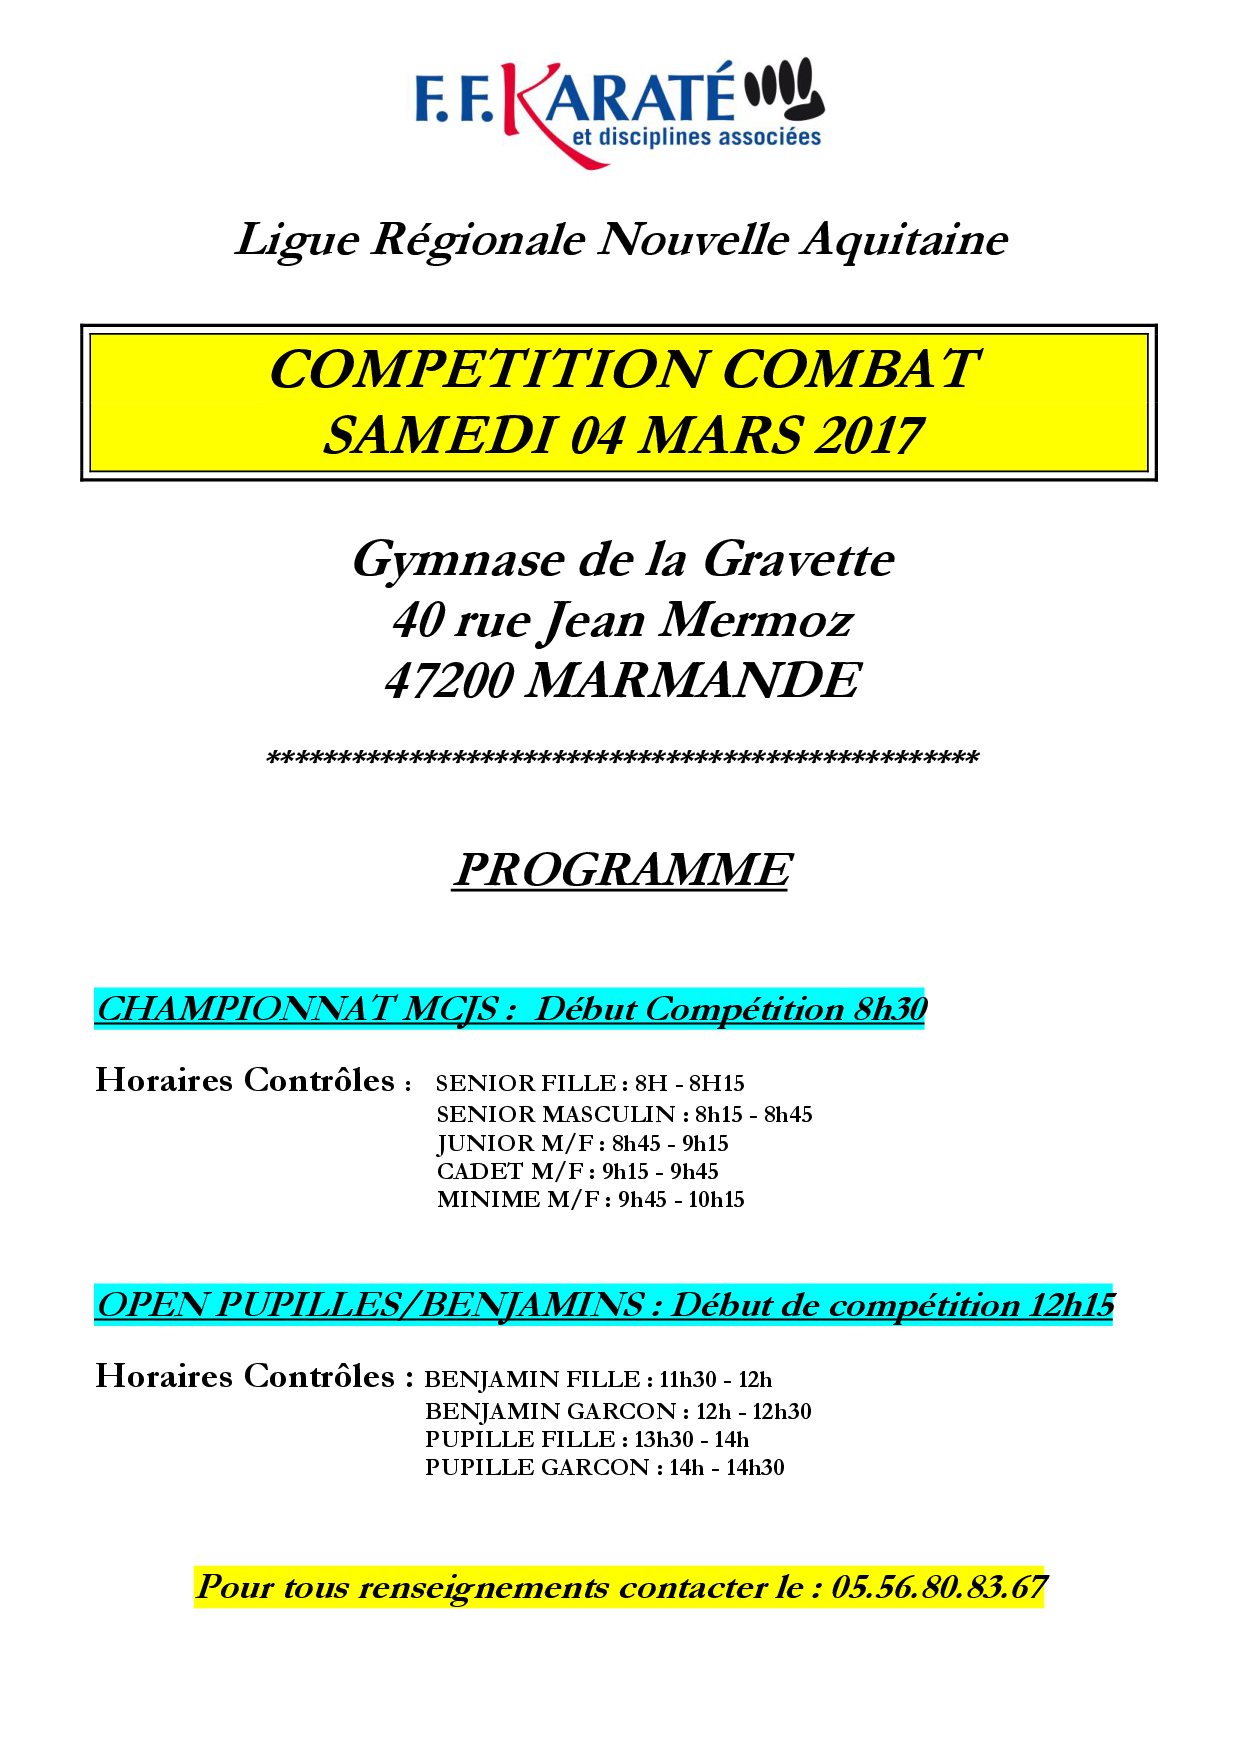 Combats marmande 04 03 17 1